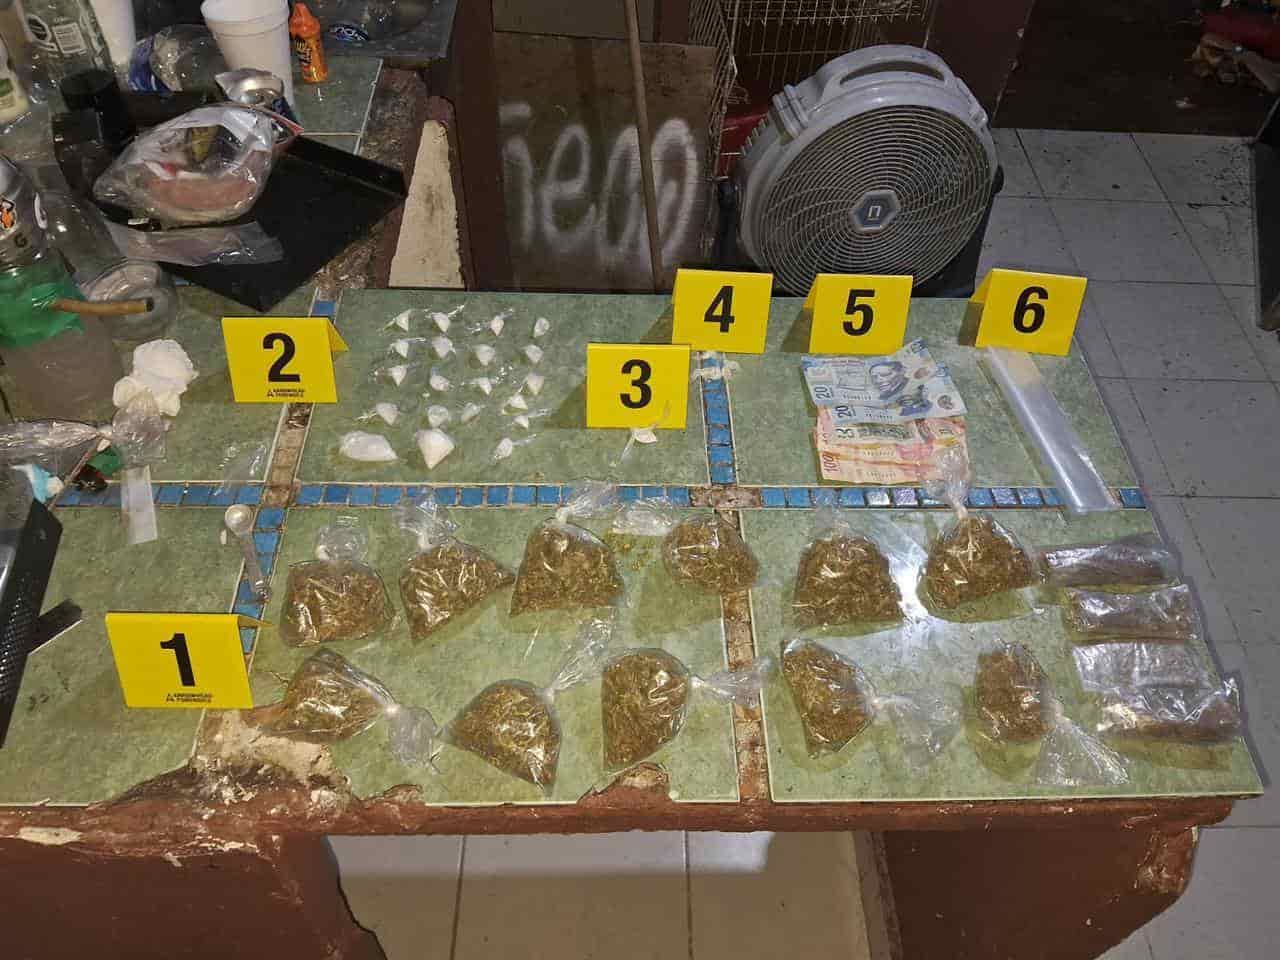 Tres hombres y una mujer fueron arrestados por elementos de la Agencia Estatal de Investigaciones luego de un cateoa un domicilio en el municipio de Juárez, donde además se aseguró droga.